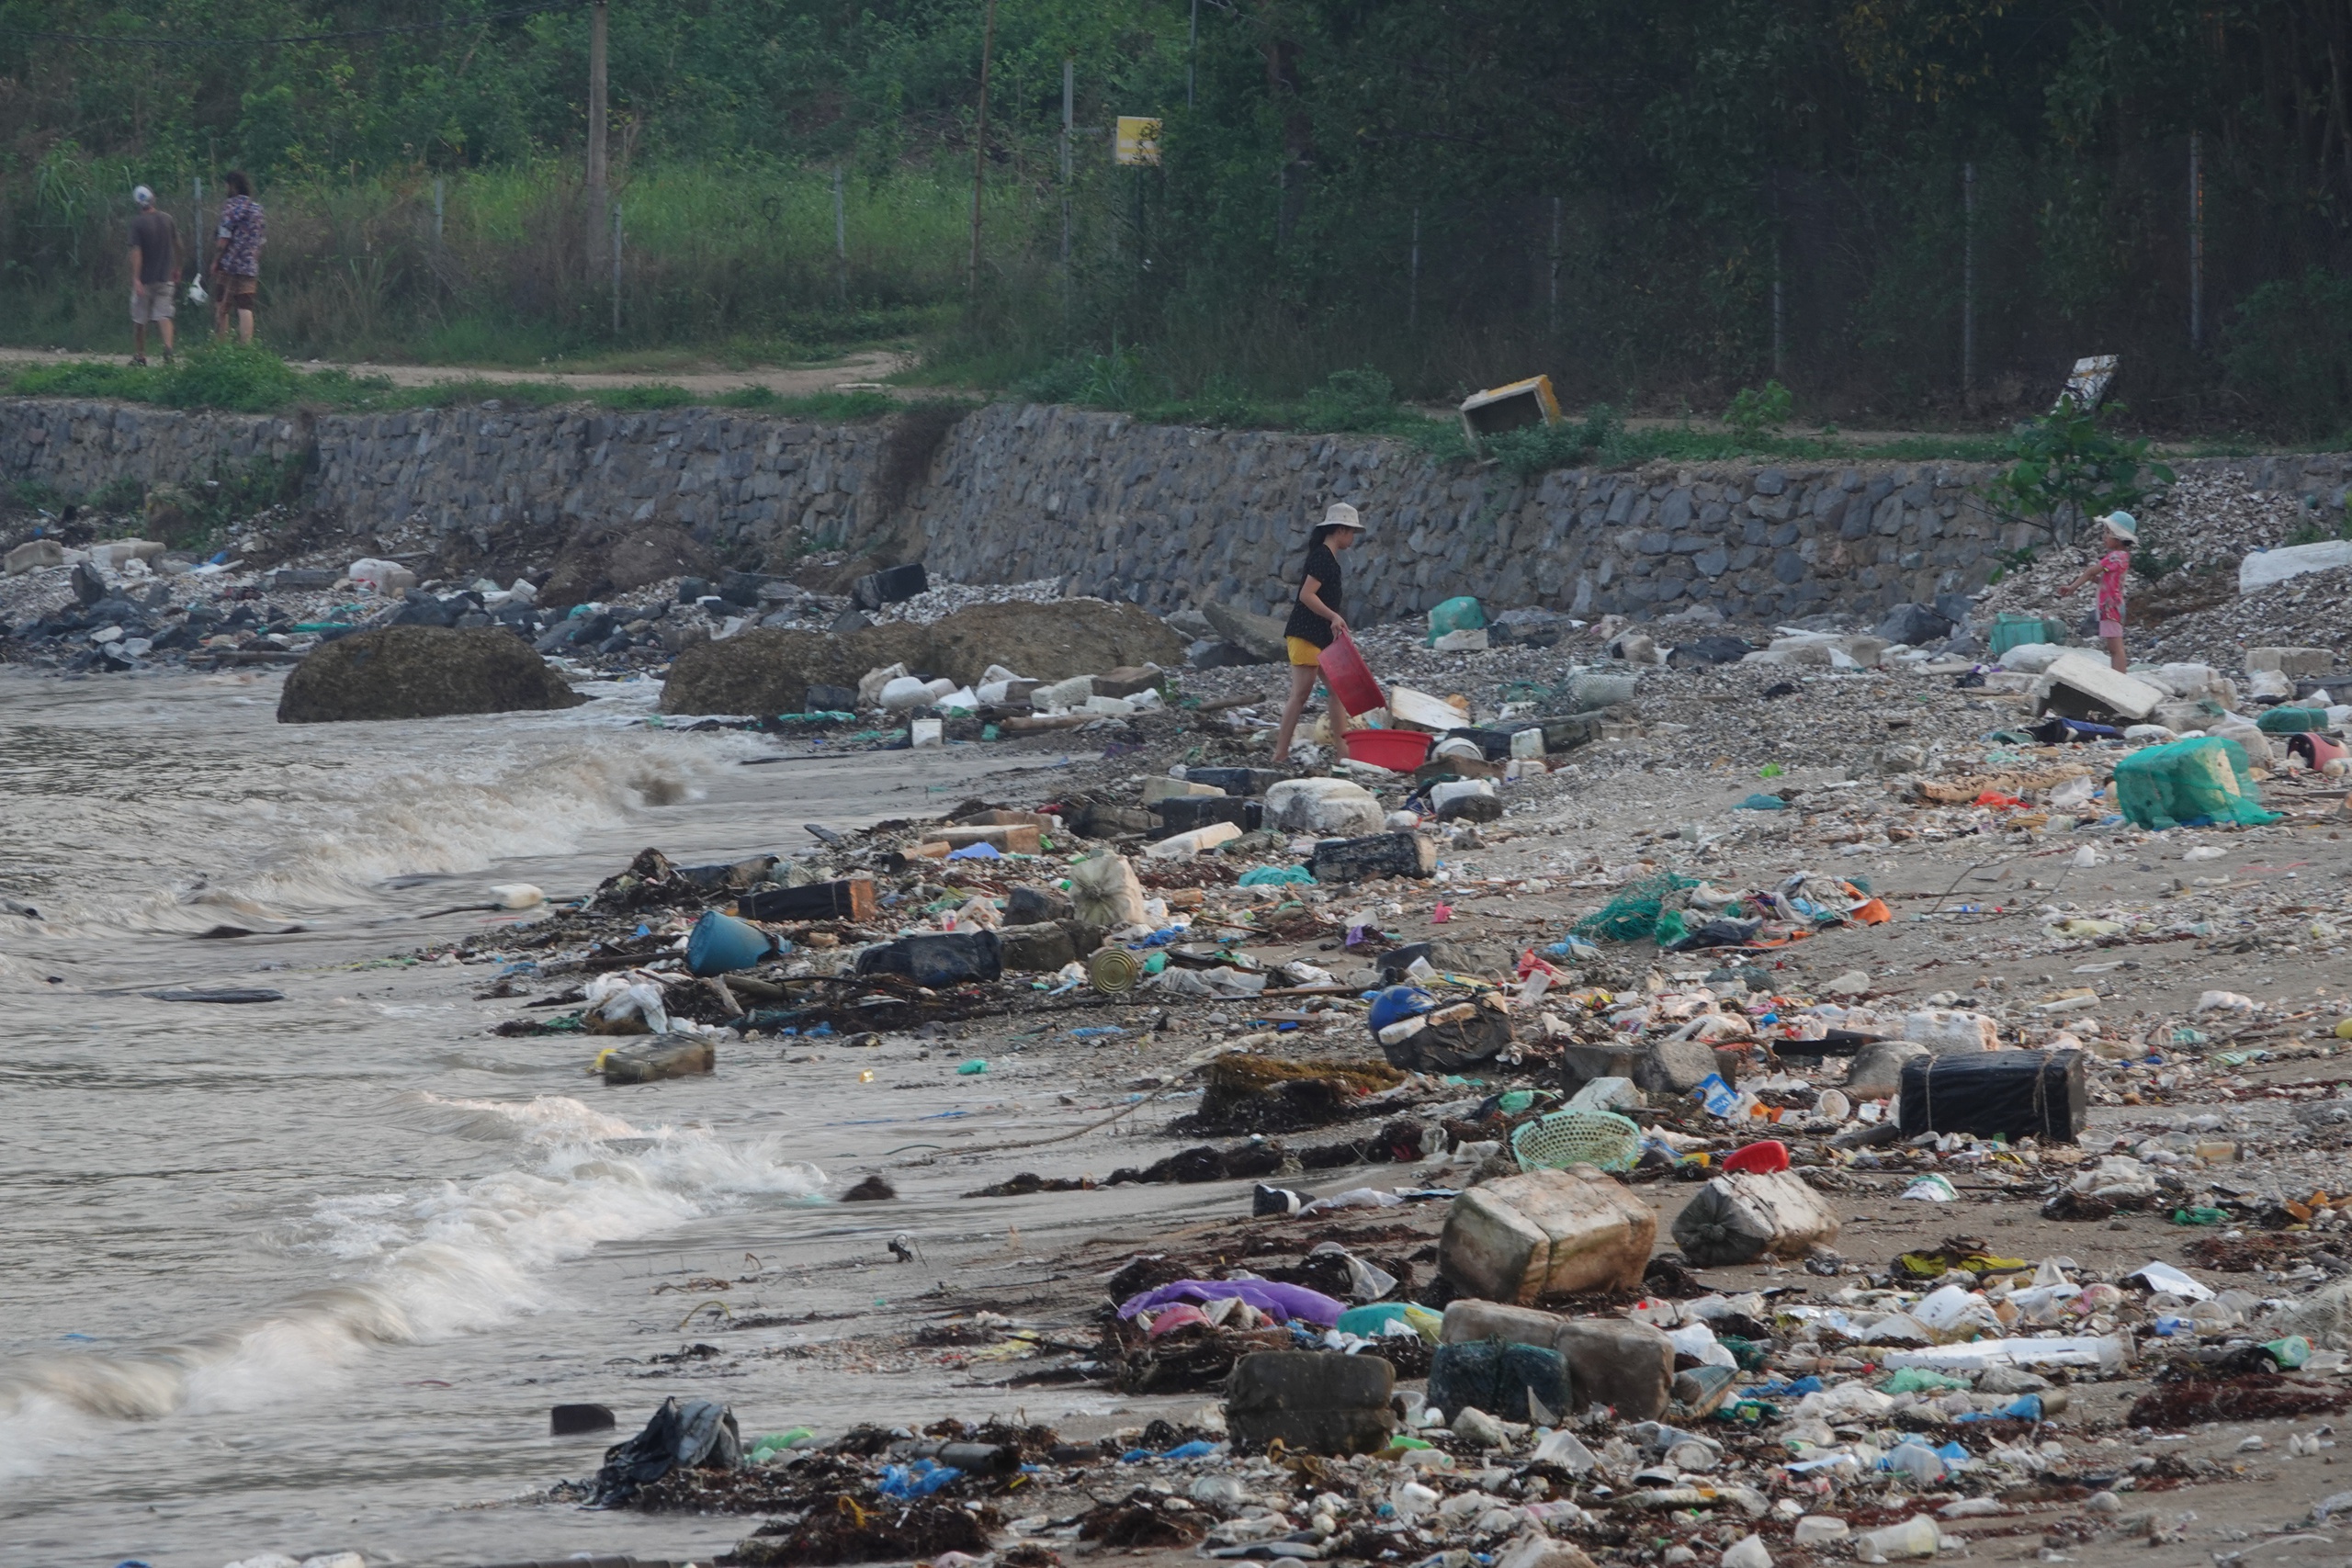 Bãi tắm ở Cát Bà tràn ngập rác thải, du khách nước ngoài nói 